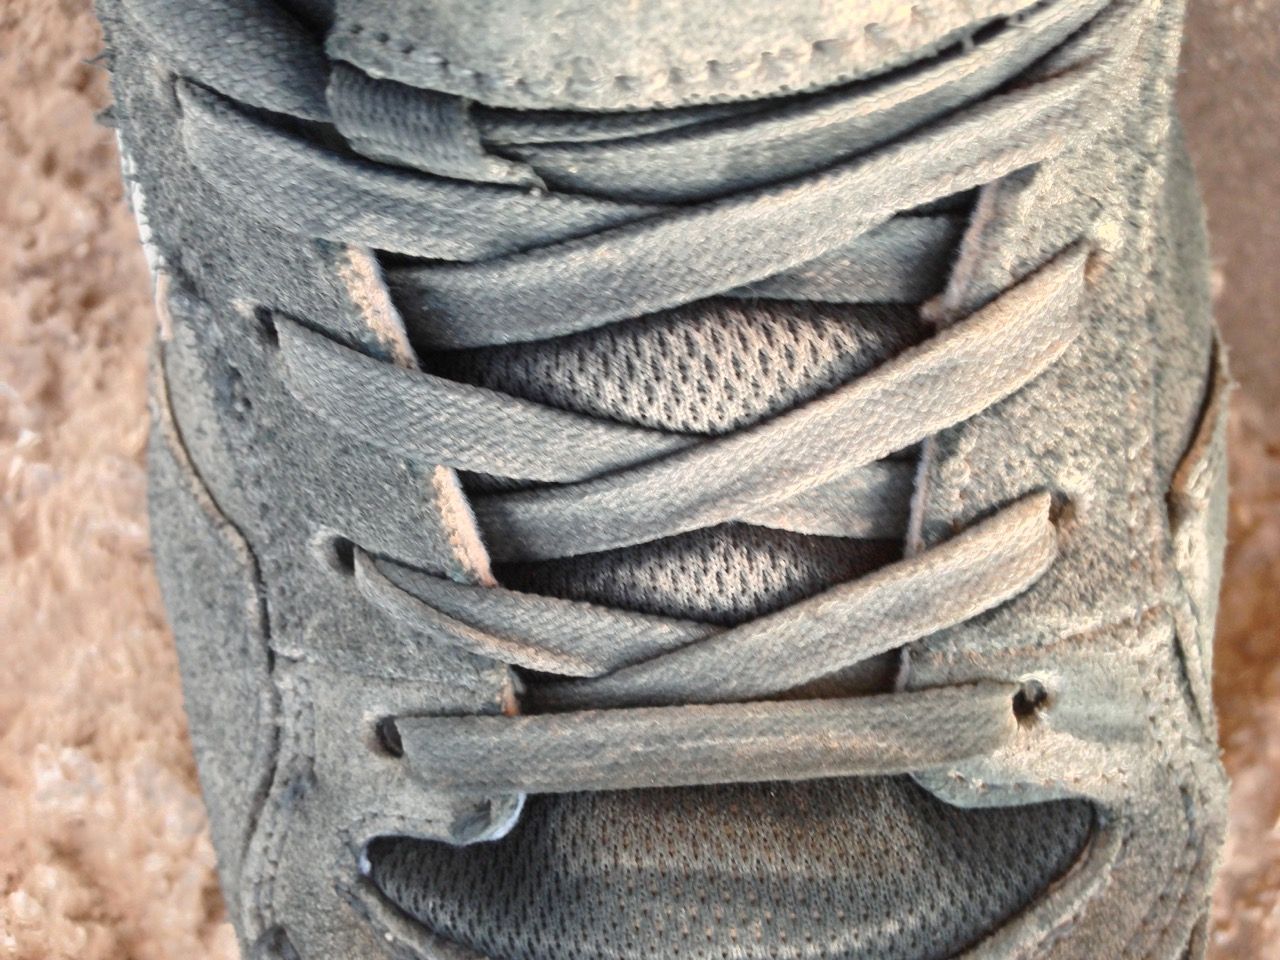 Dusty shoe